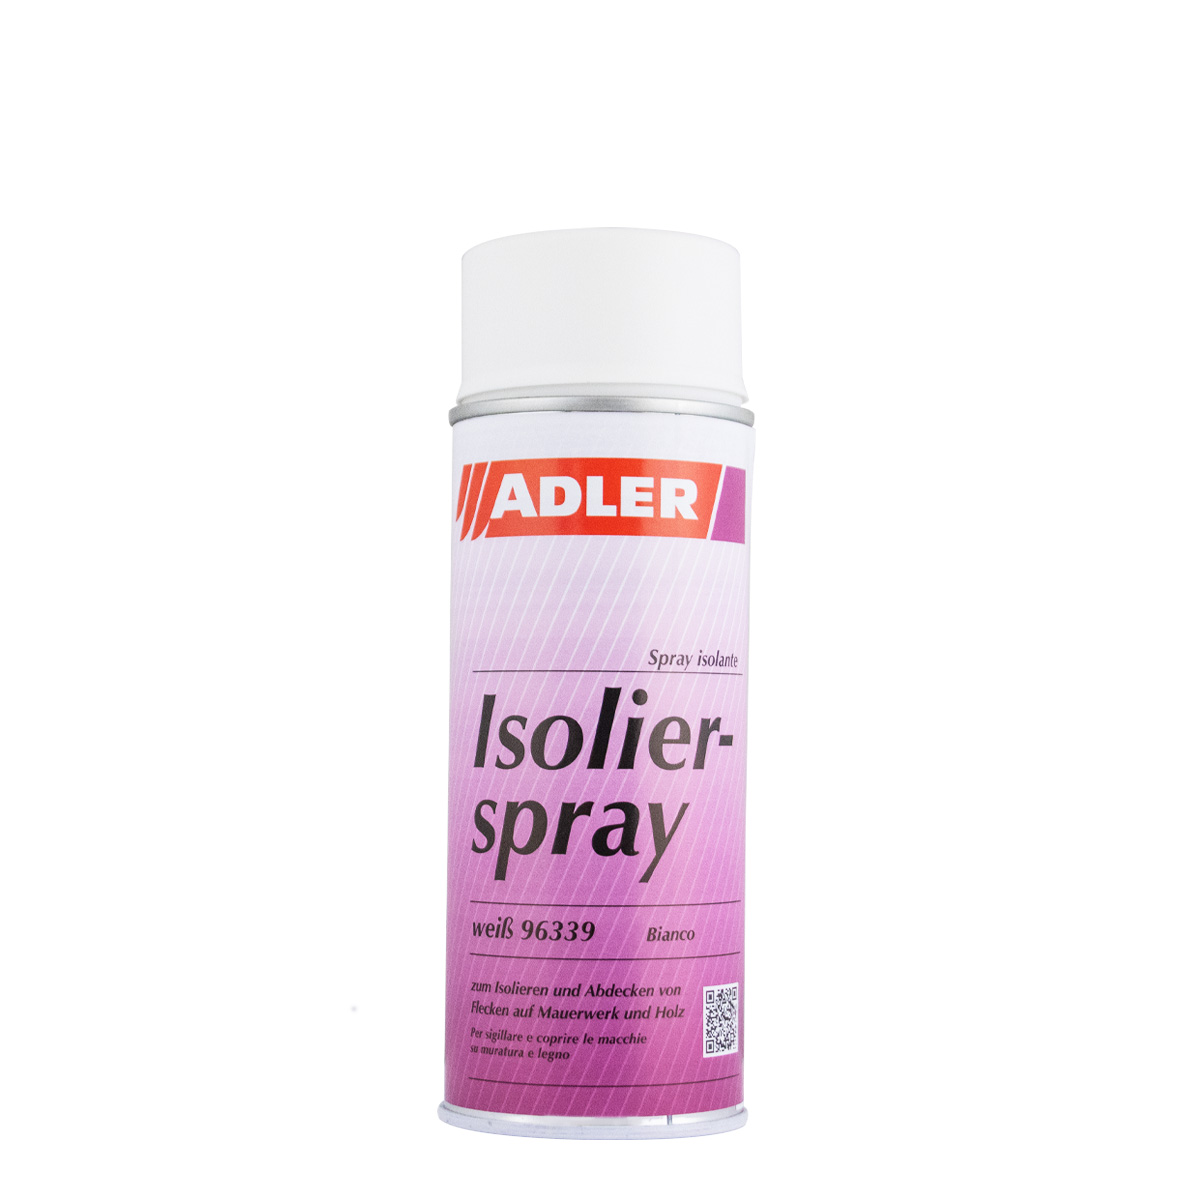 Adler Isolierspray 400ml weiß, Isoliergrund, Fleckenblocker